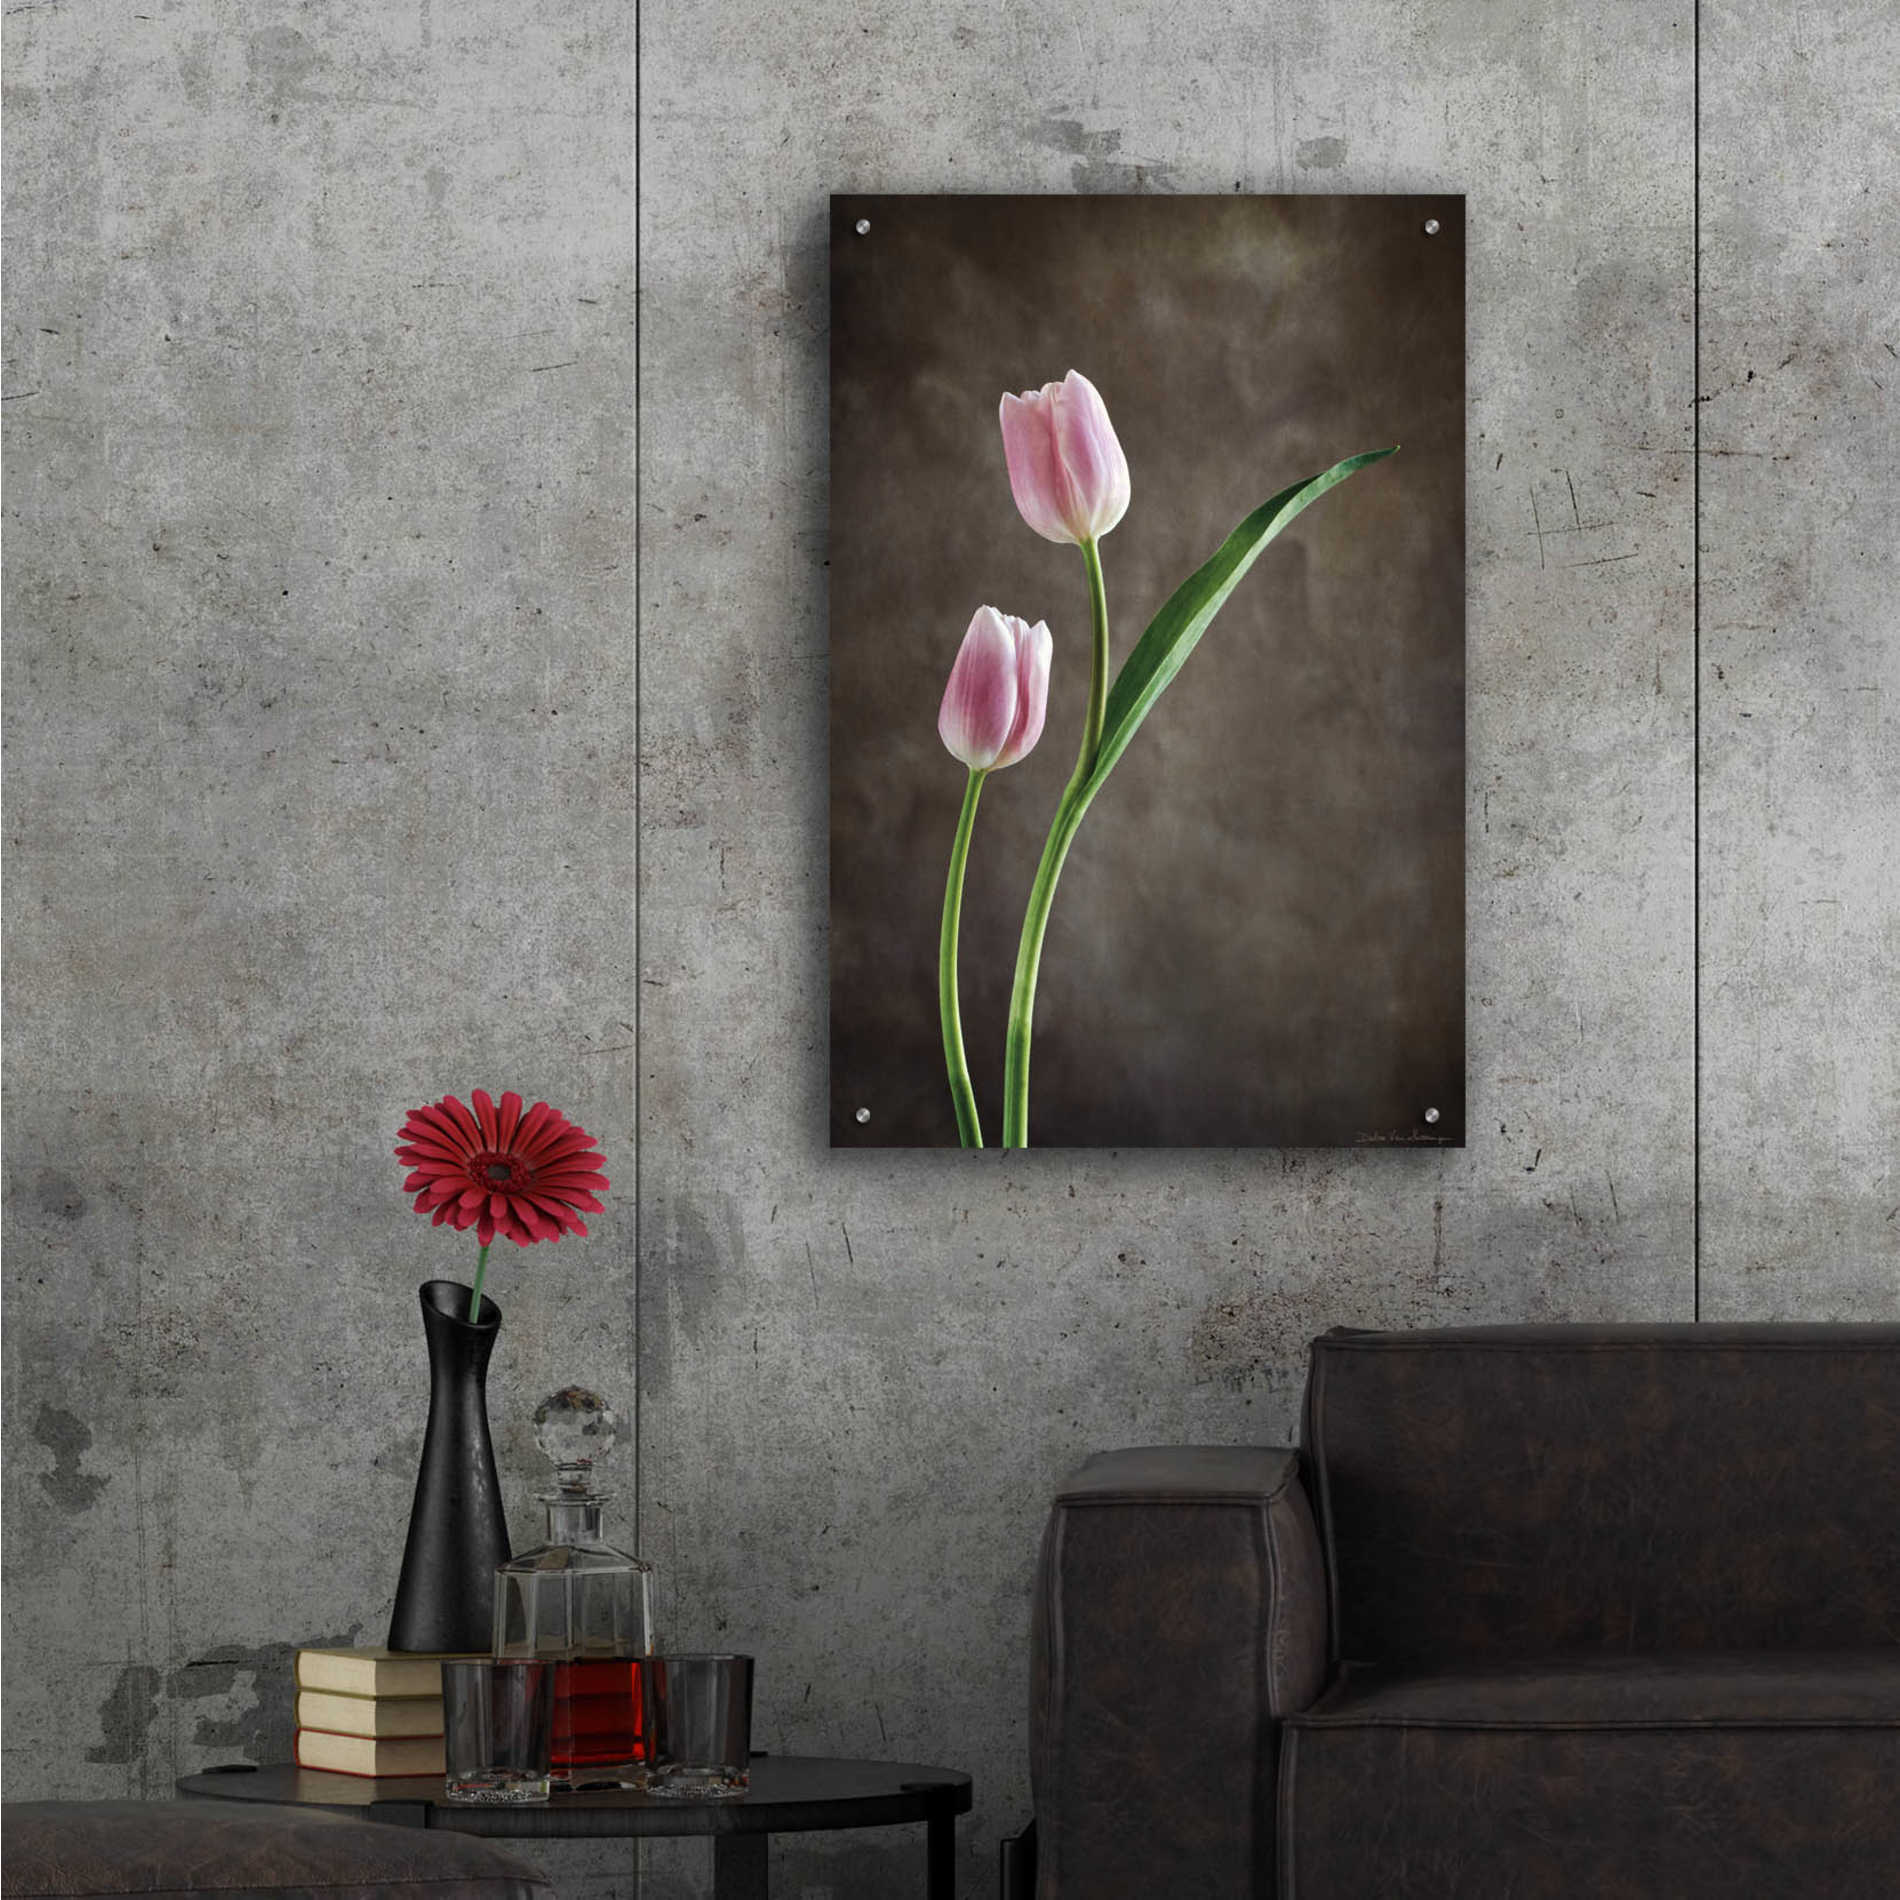 Epic Art 'Spring Tulips IV' by Debra Van Swearingen, Acrylic Glass Wall Art,24x36